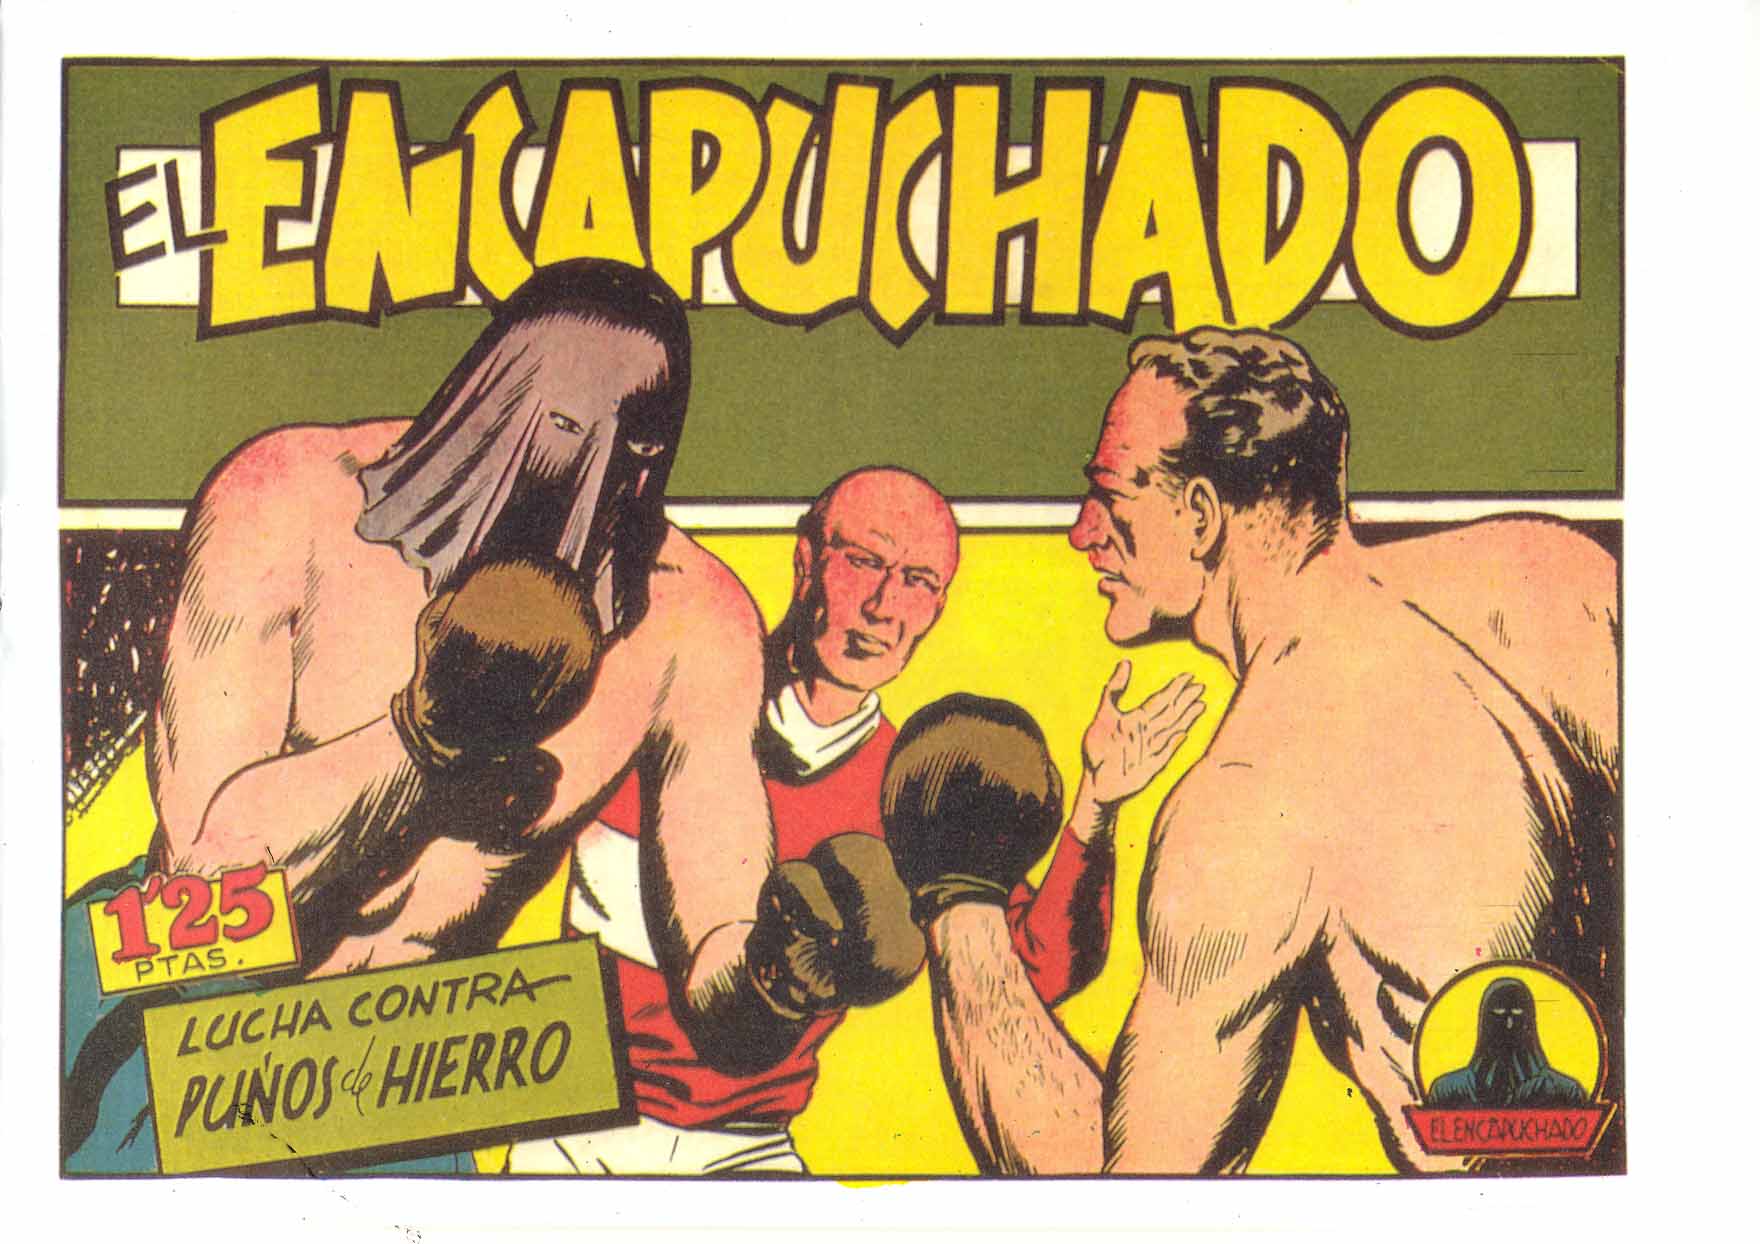 Comic Book Cover For El Encapuchado 13 - Lucha Contra Puños De Hierro